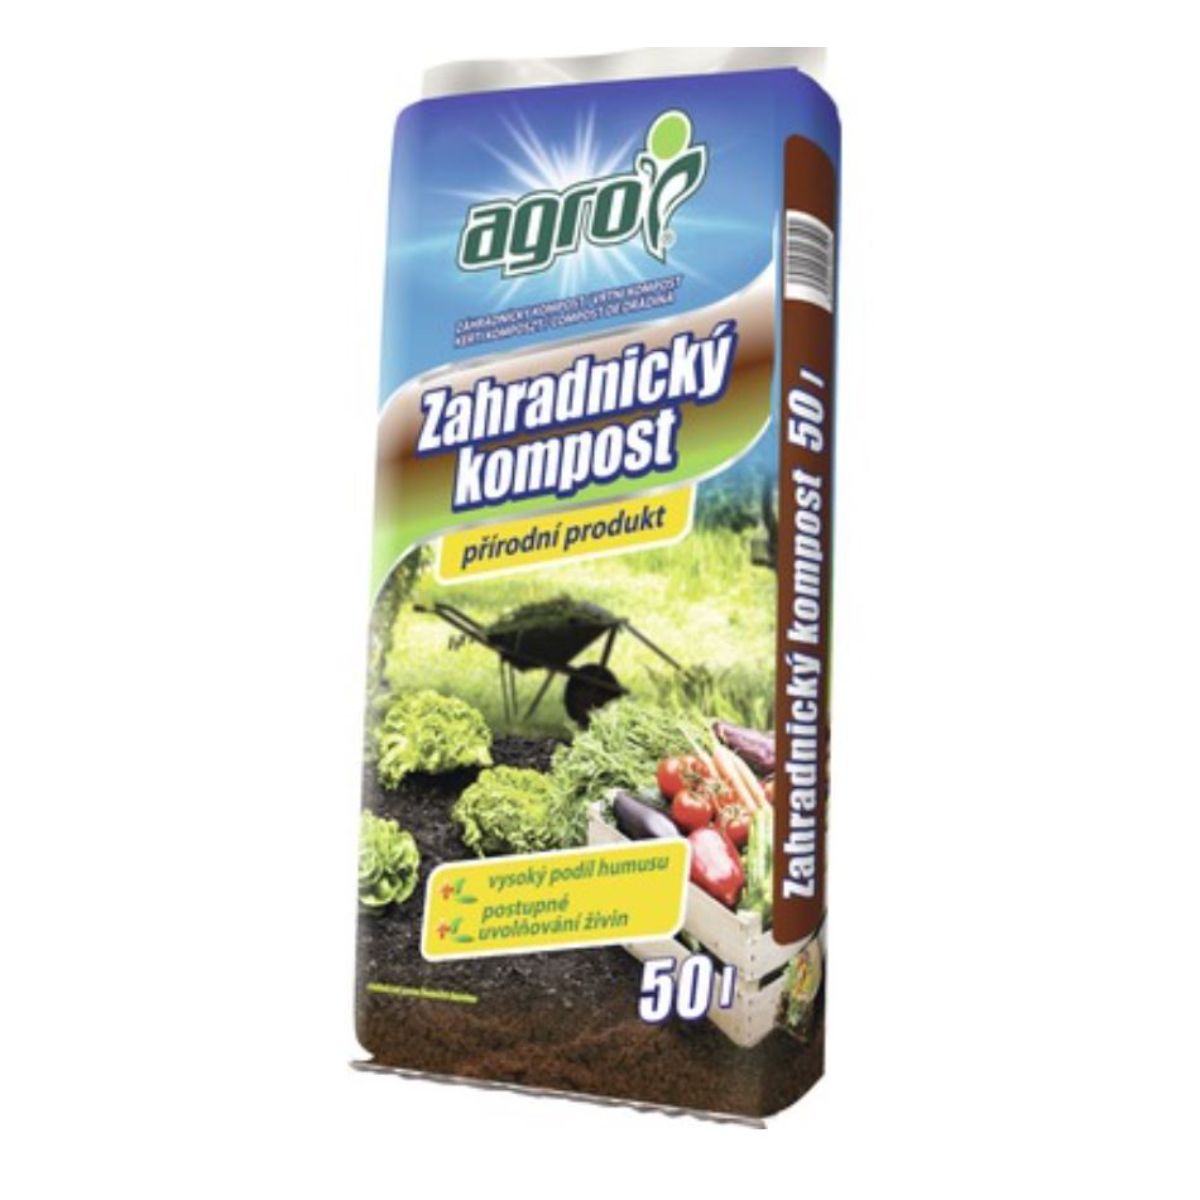 Fertilizanti si biostimulatori pentru aplicare foliara - Compost   AGRO 50 l, hectarul.ro